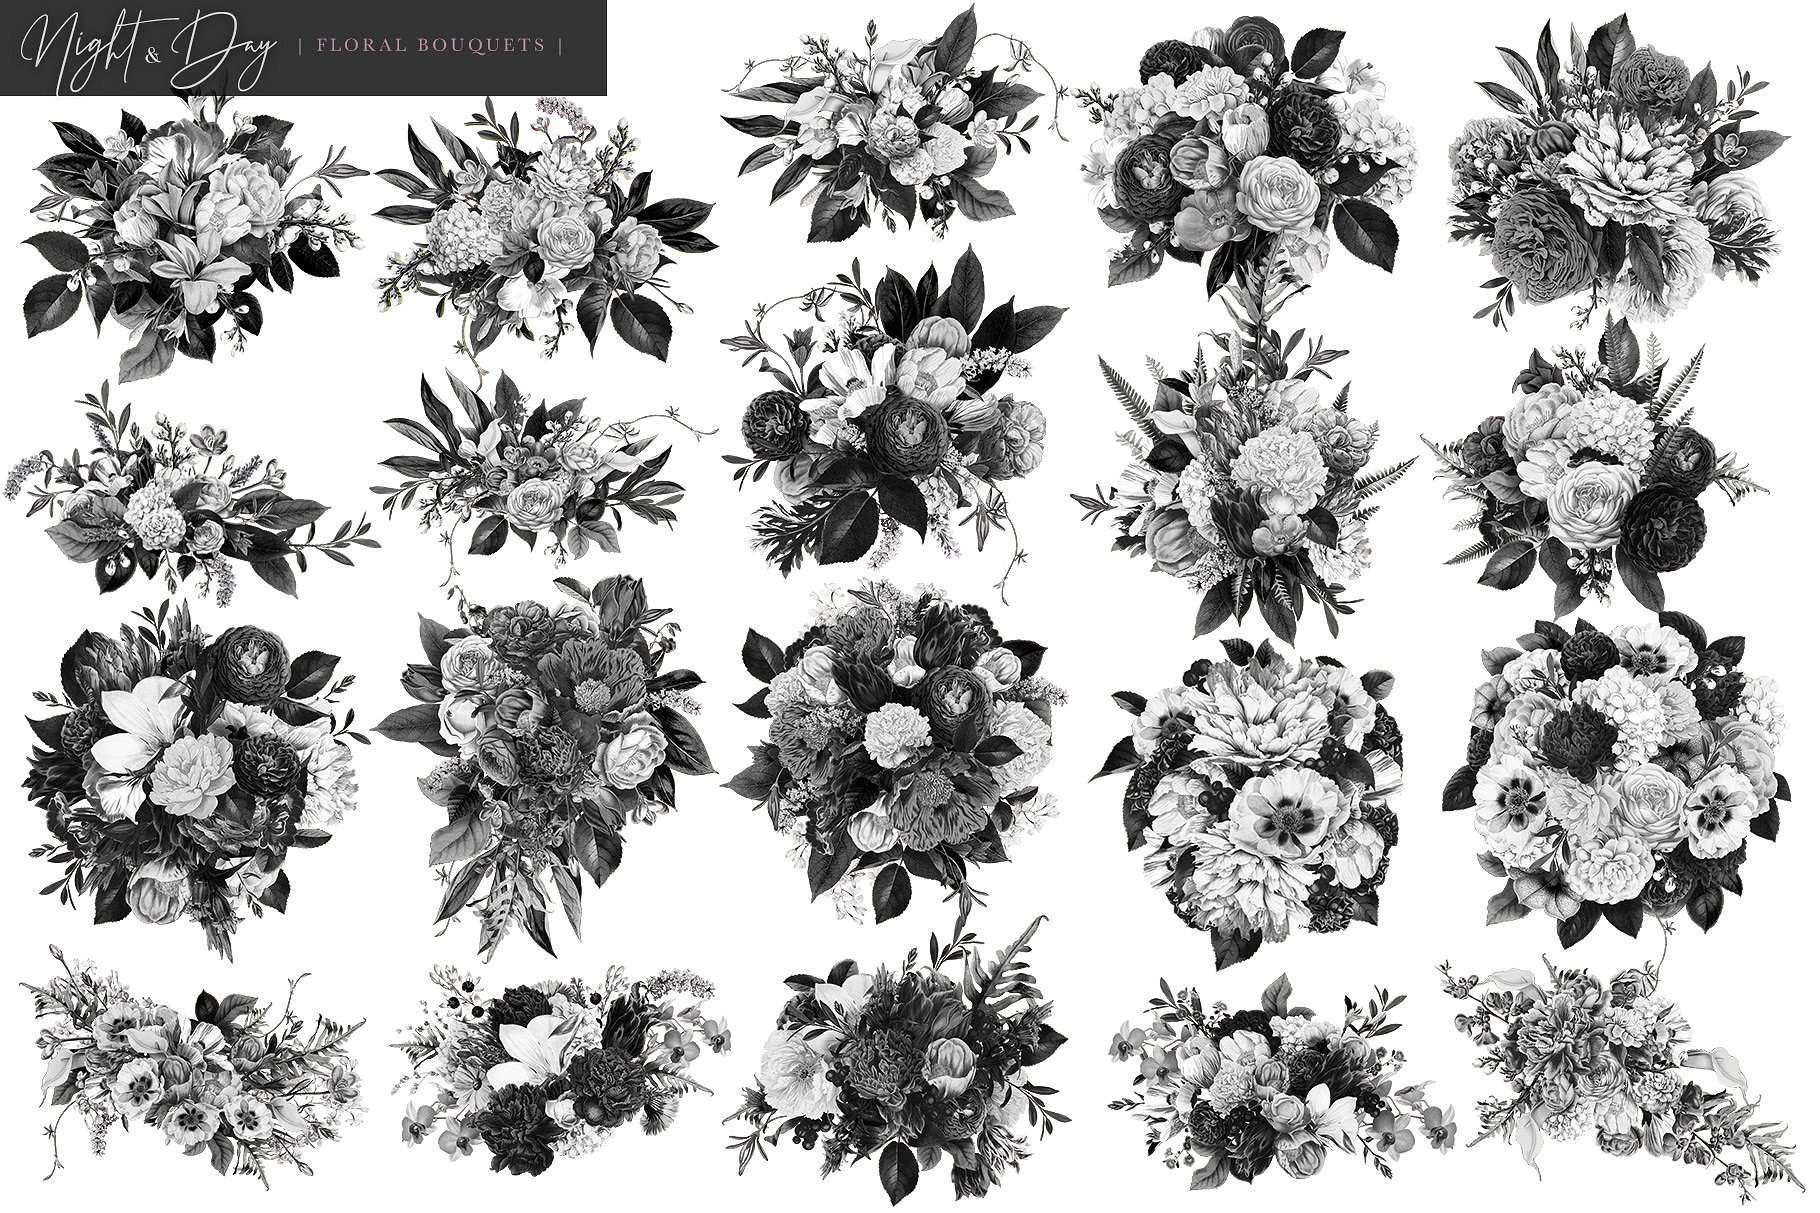 繁花似锦复古花卉插画素材[昼夜和白日两个版本] Night and Day Floral Bouquets插图7